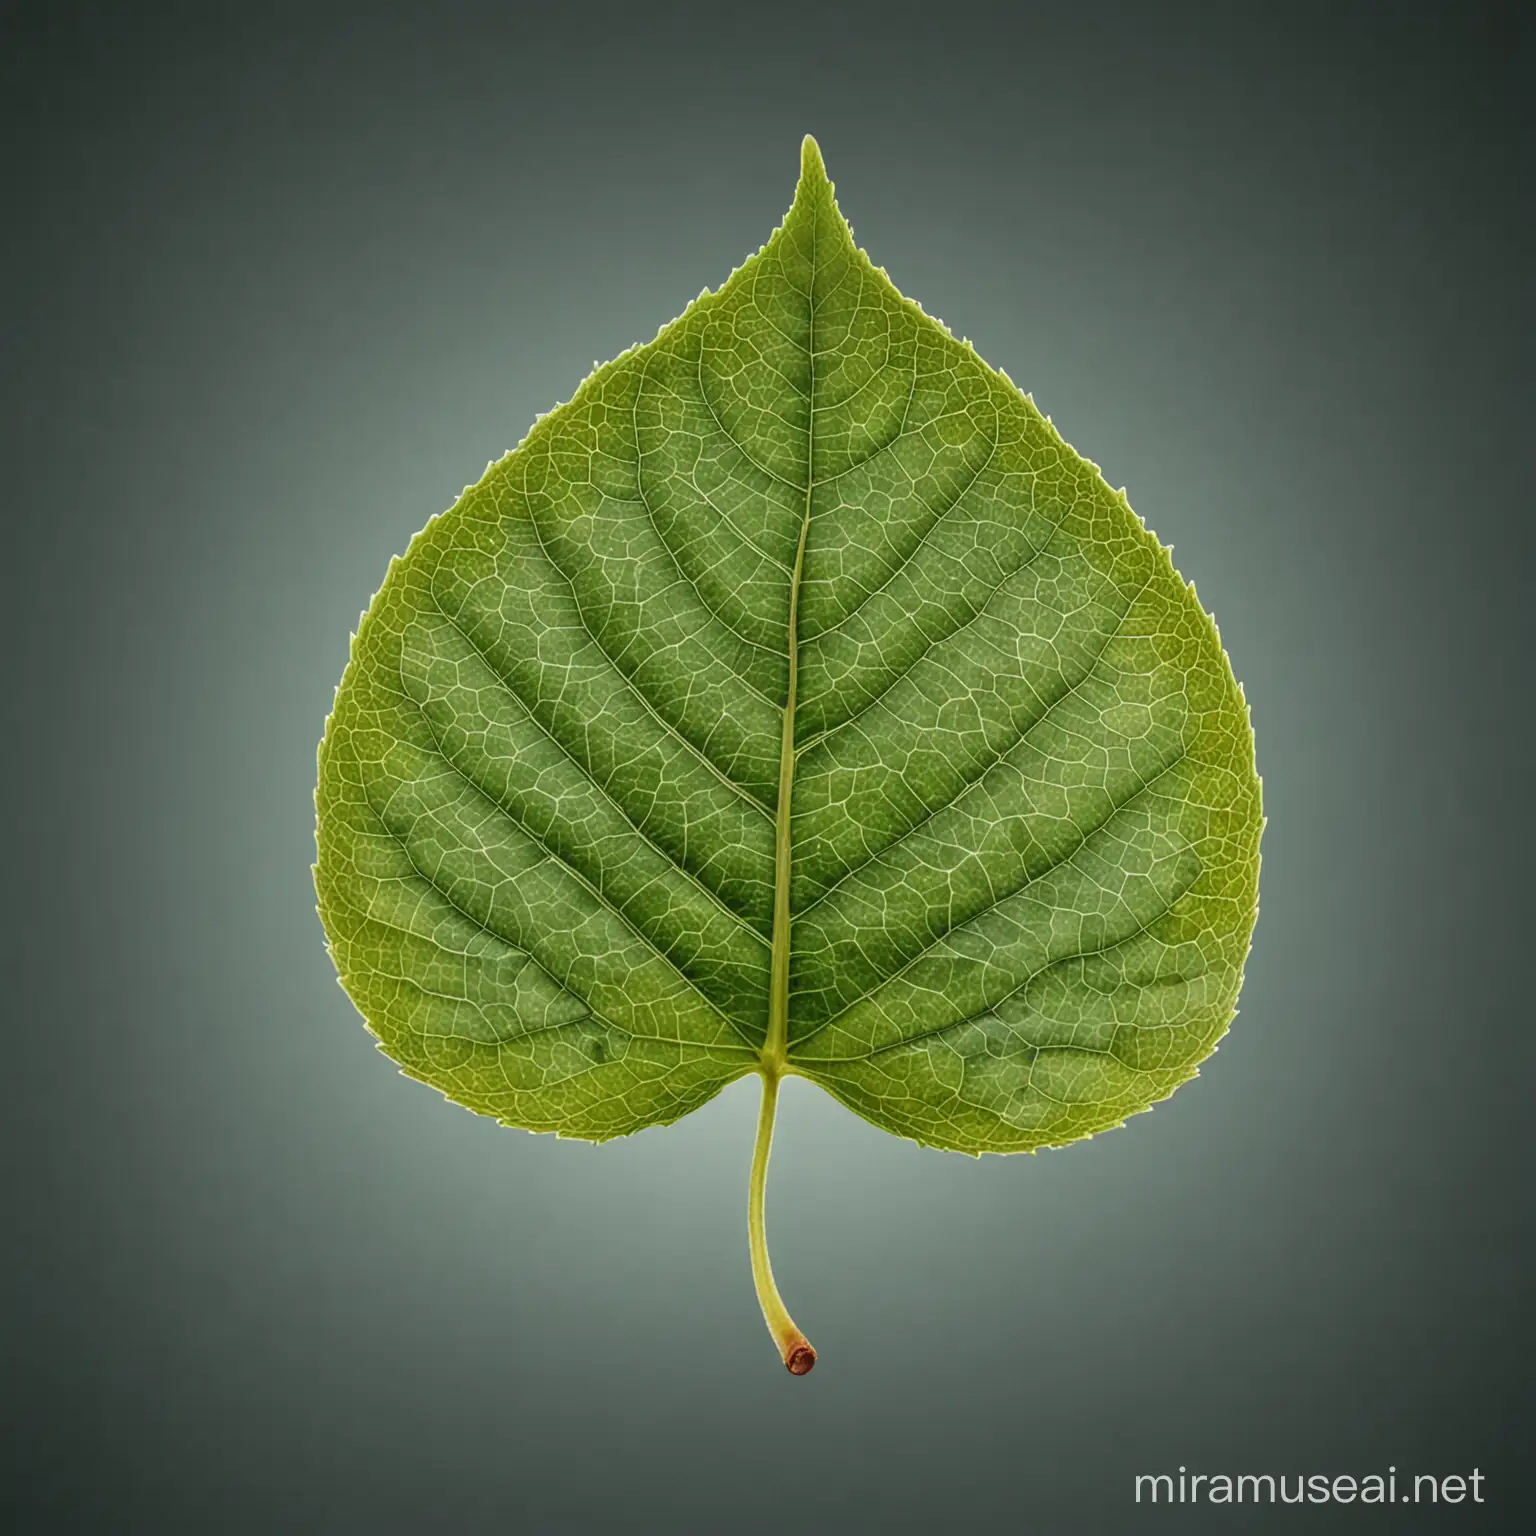 Single Fresh Leaf with Symmetrical Geometric Shape on Isolated Background